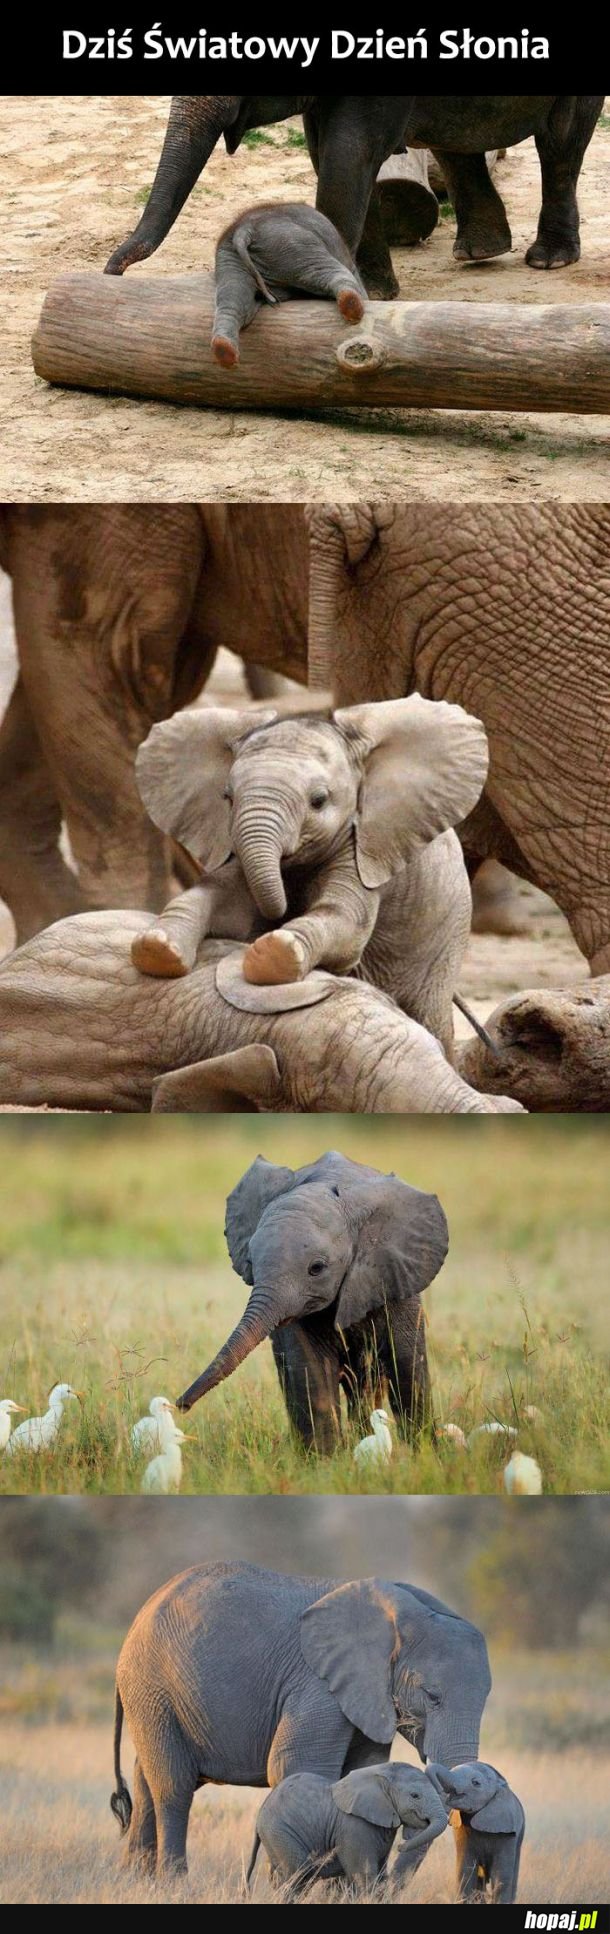  Światowy Dzień Słonia 